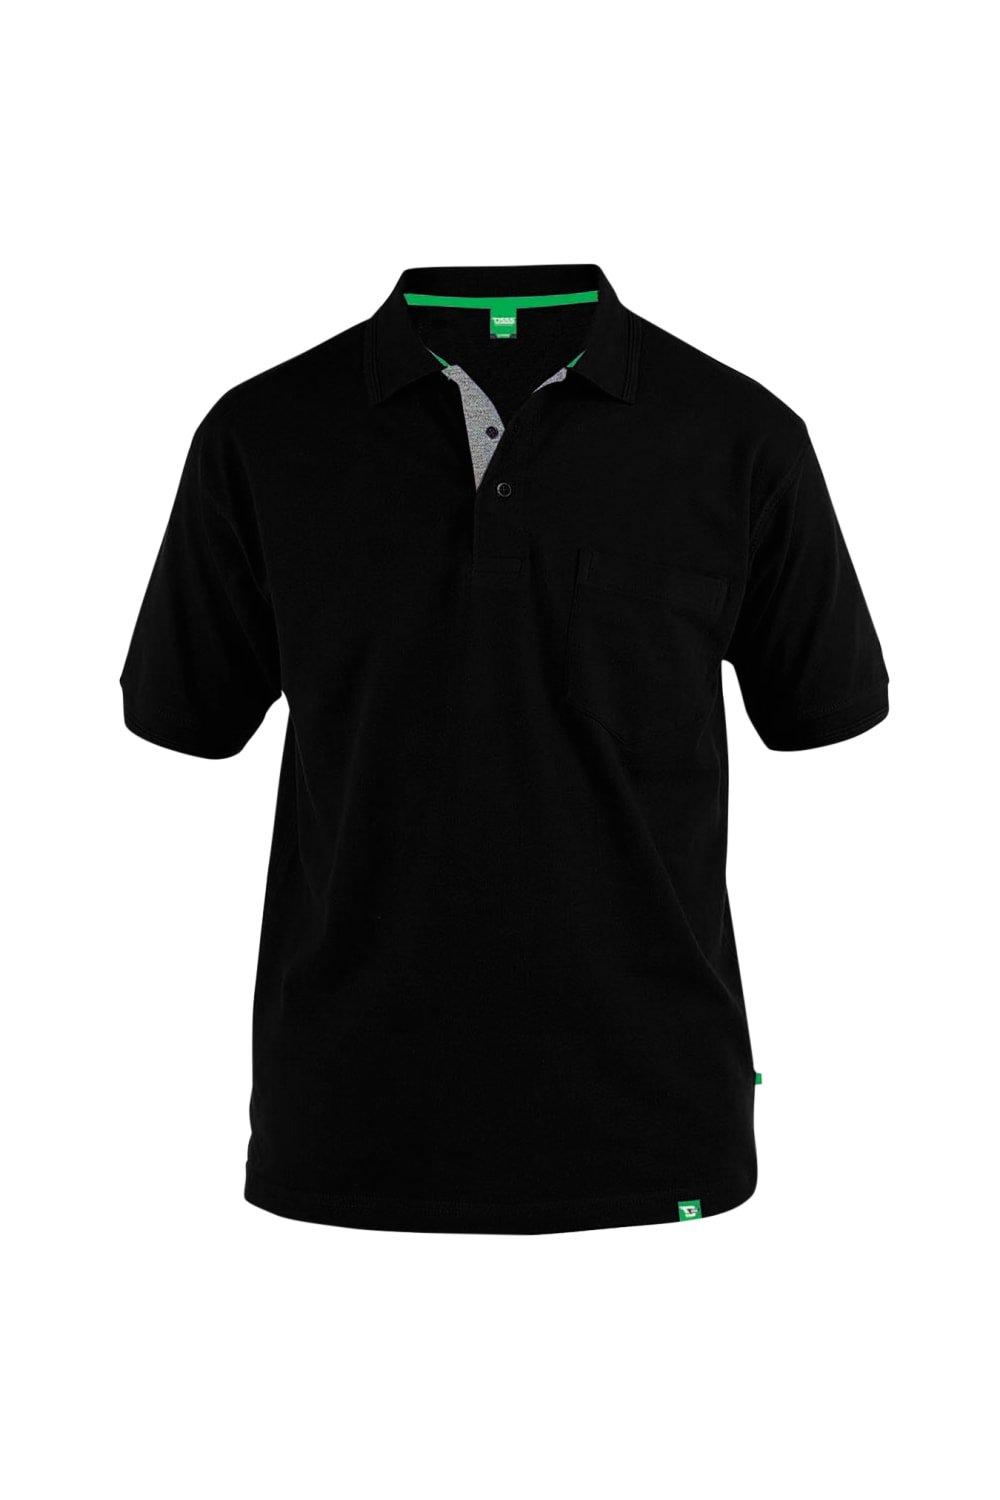 Рубашка поло из пике с нагрудным карманом Grant Duke Clothing, черный мужская повседневная спортивная рубашка поло tuveke спортивная рубашка поло с воротником стойкой и короткими рукавами высококачественная о